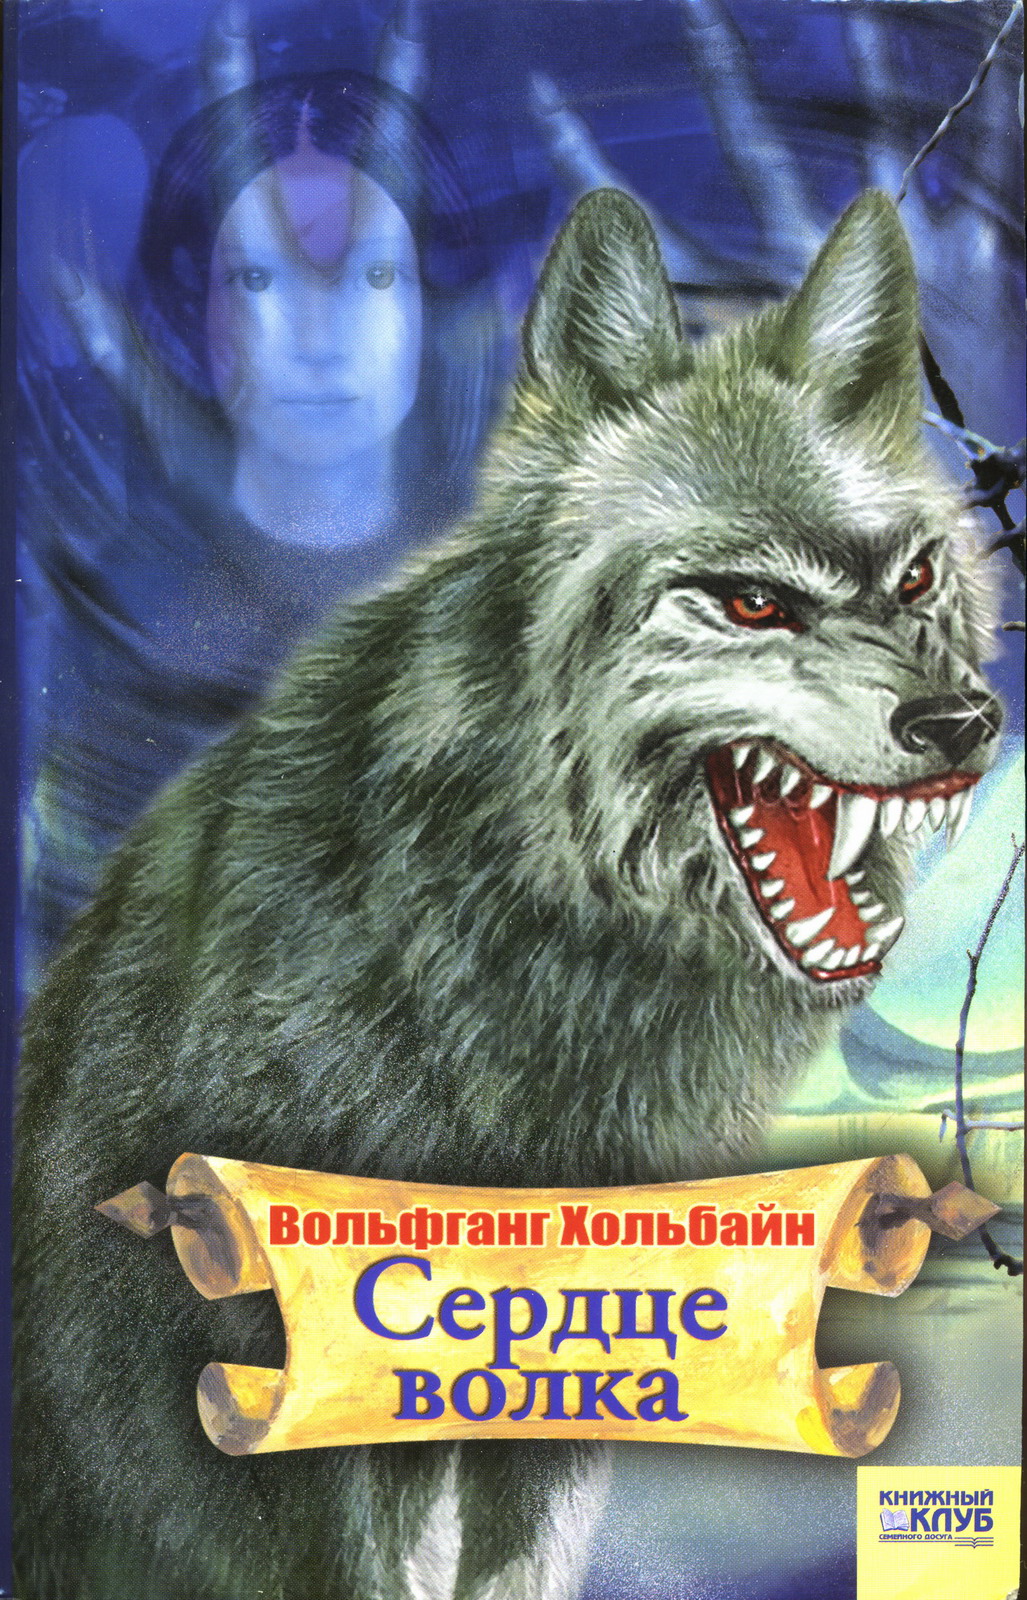 Читать книги про волков. Сердце волка. Книжки про Волков. Книга волк. Обложка книги с волком.